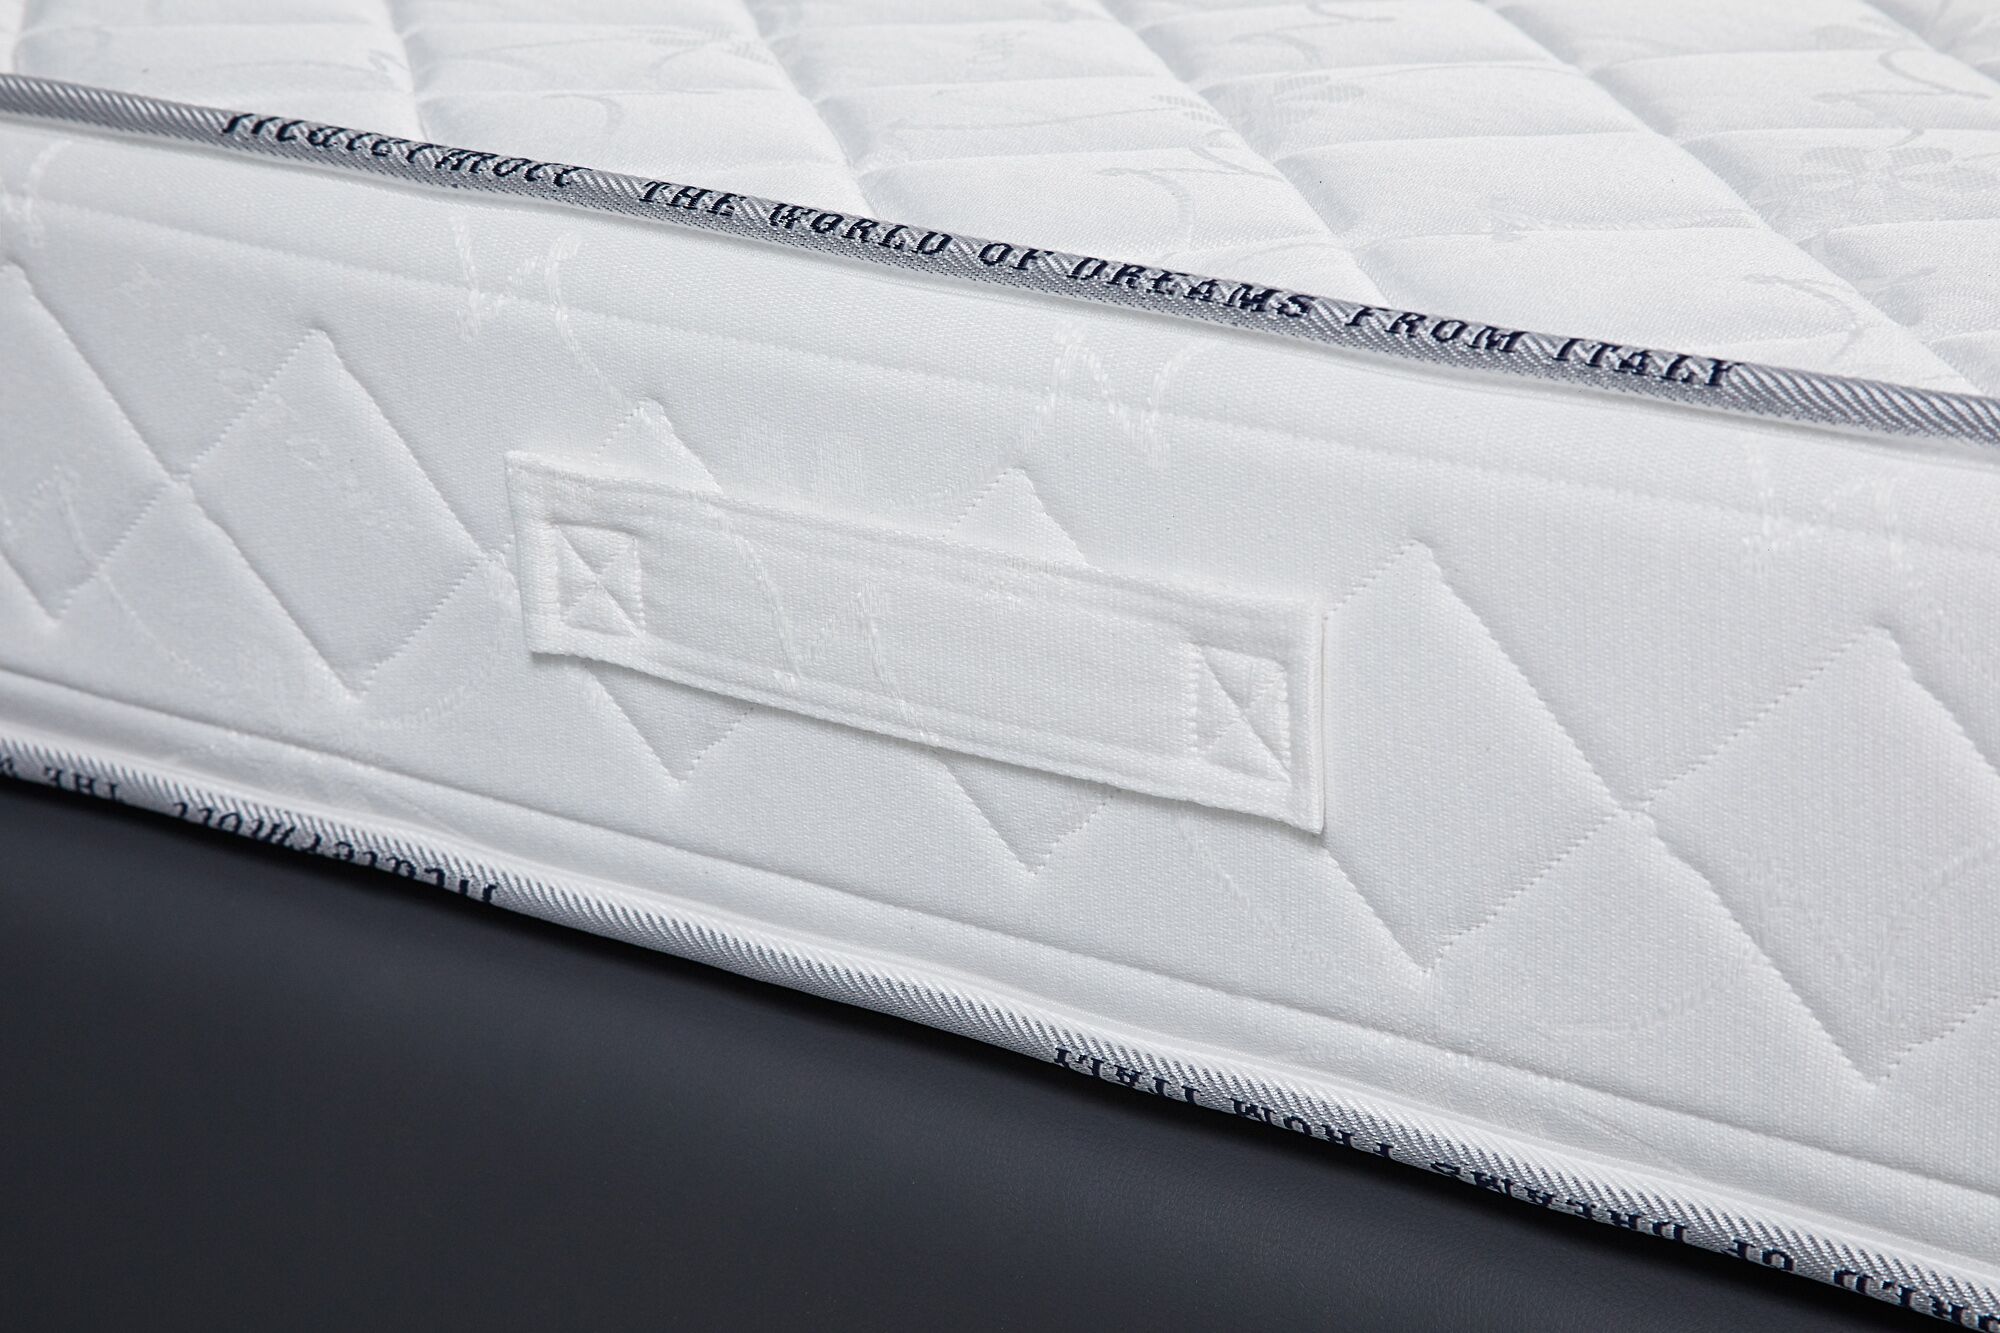 fantastic capri mattress review